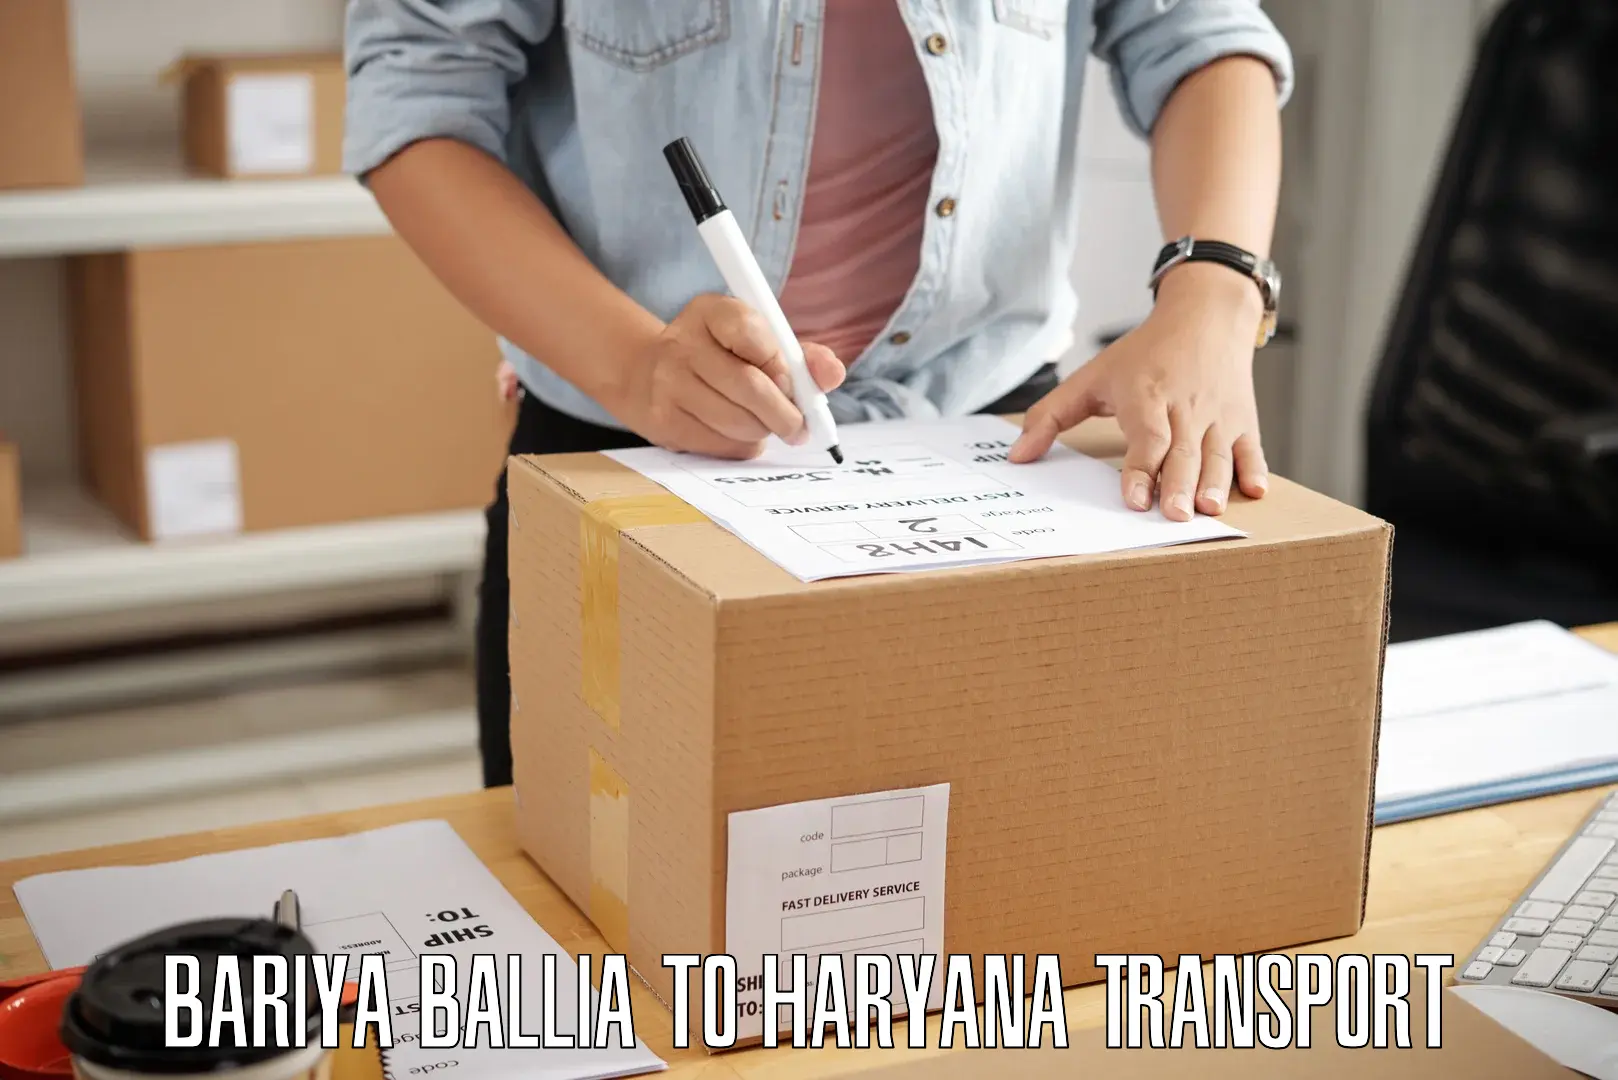 Cargo transport services Bariya Ballia to Hodal